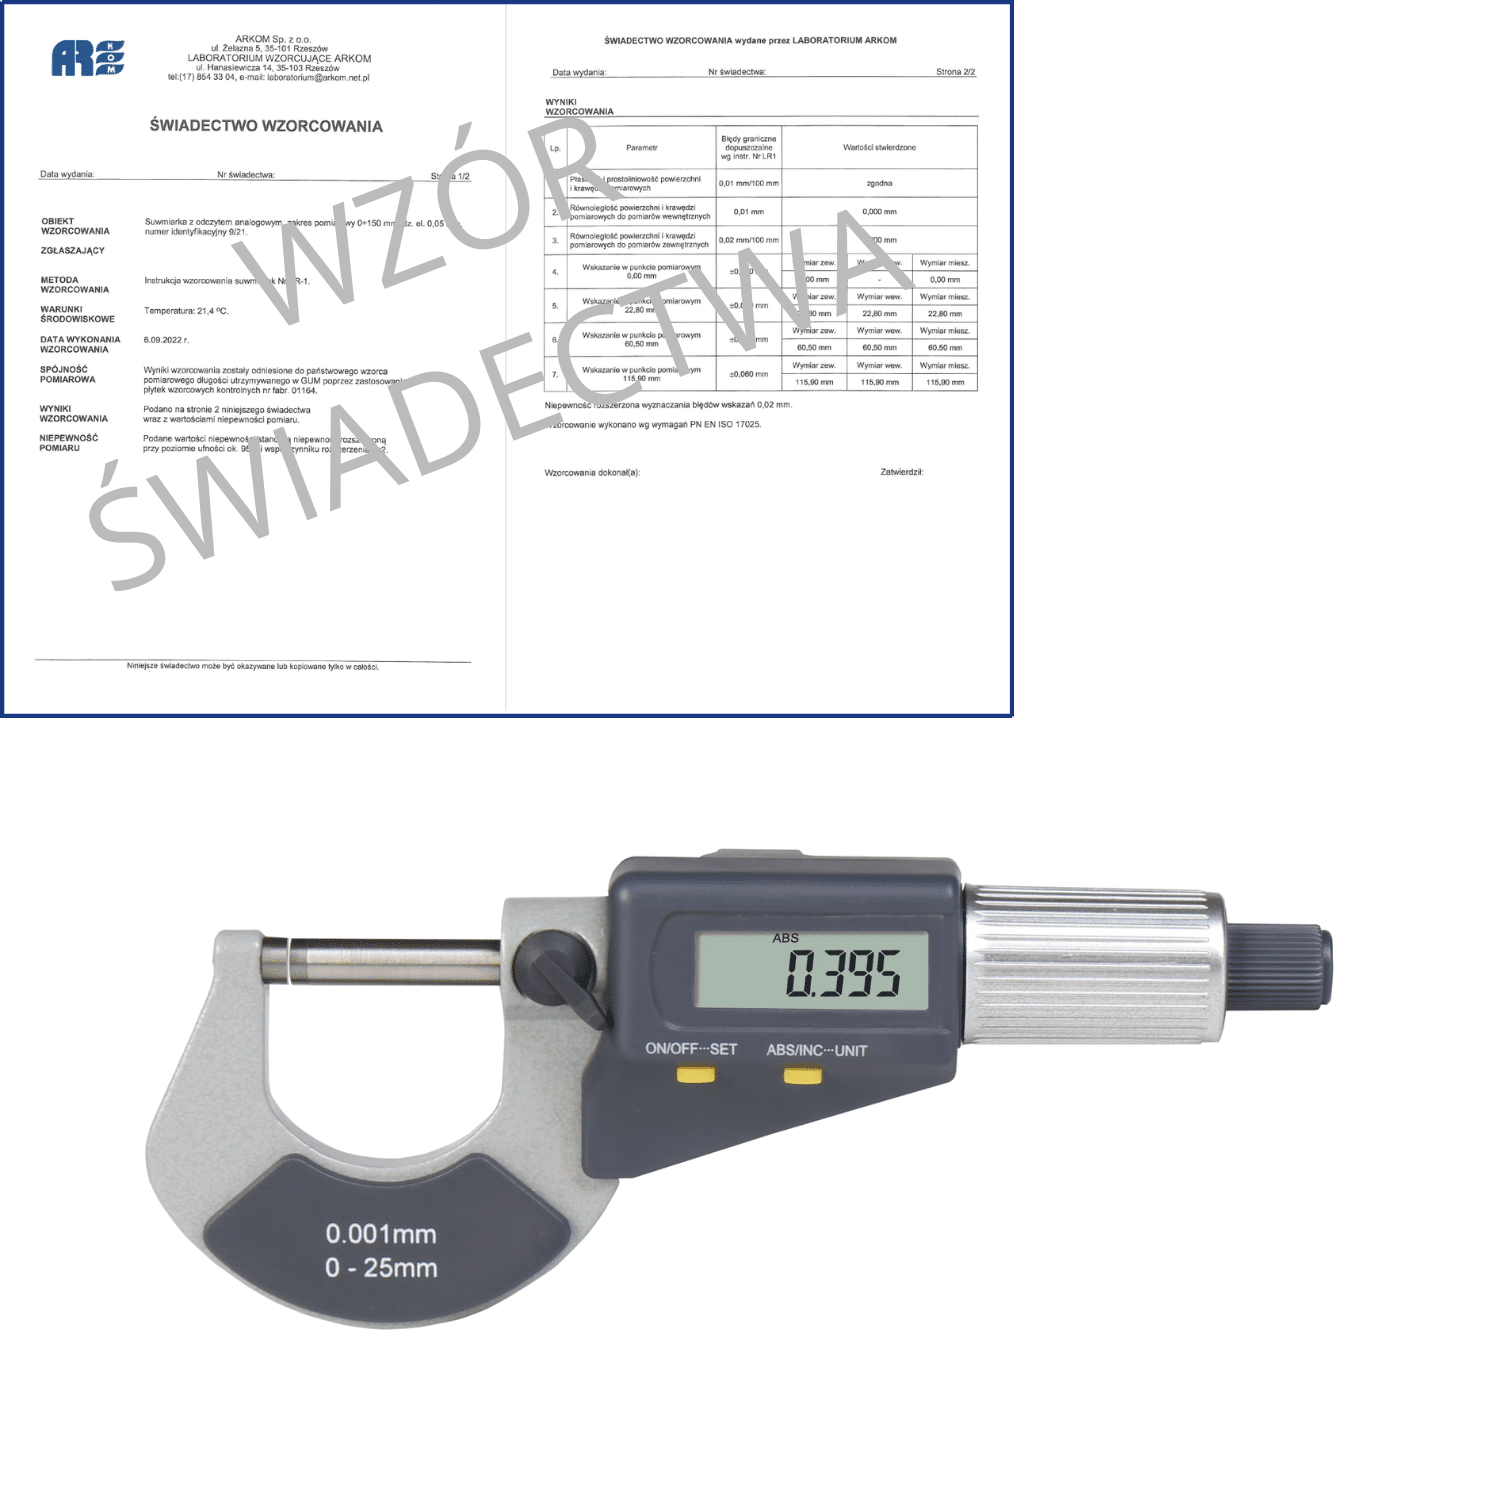 ACCUD mikrometr elektroniczny 0-25/0,001 mm + świadectwo wzorcowania 312-001-03 WZORC